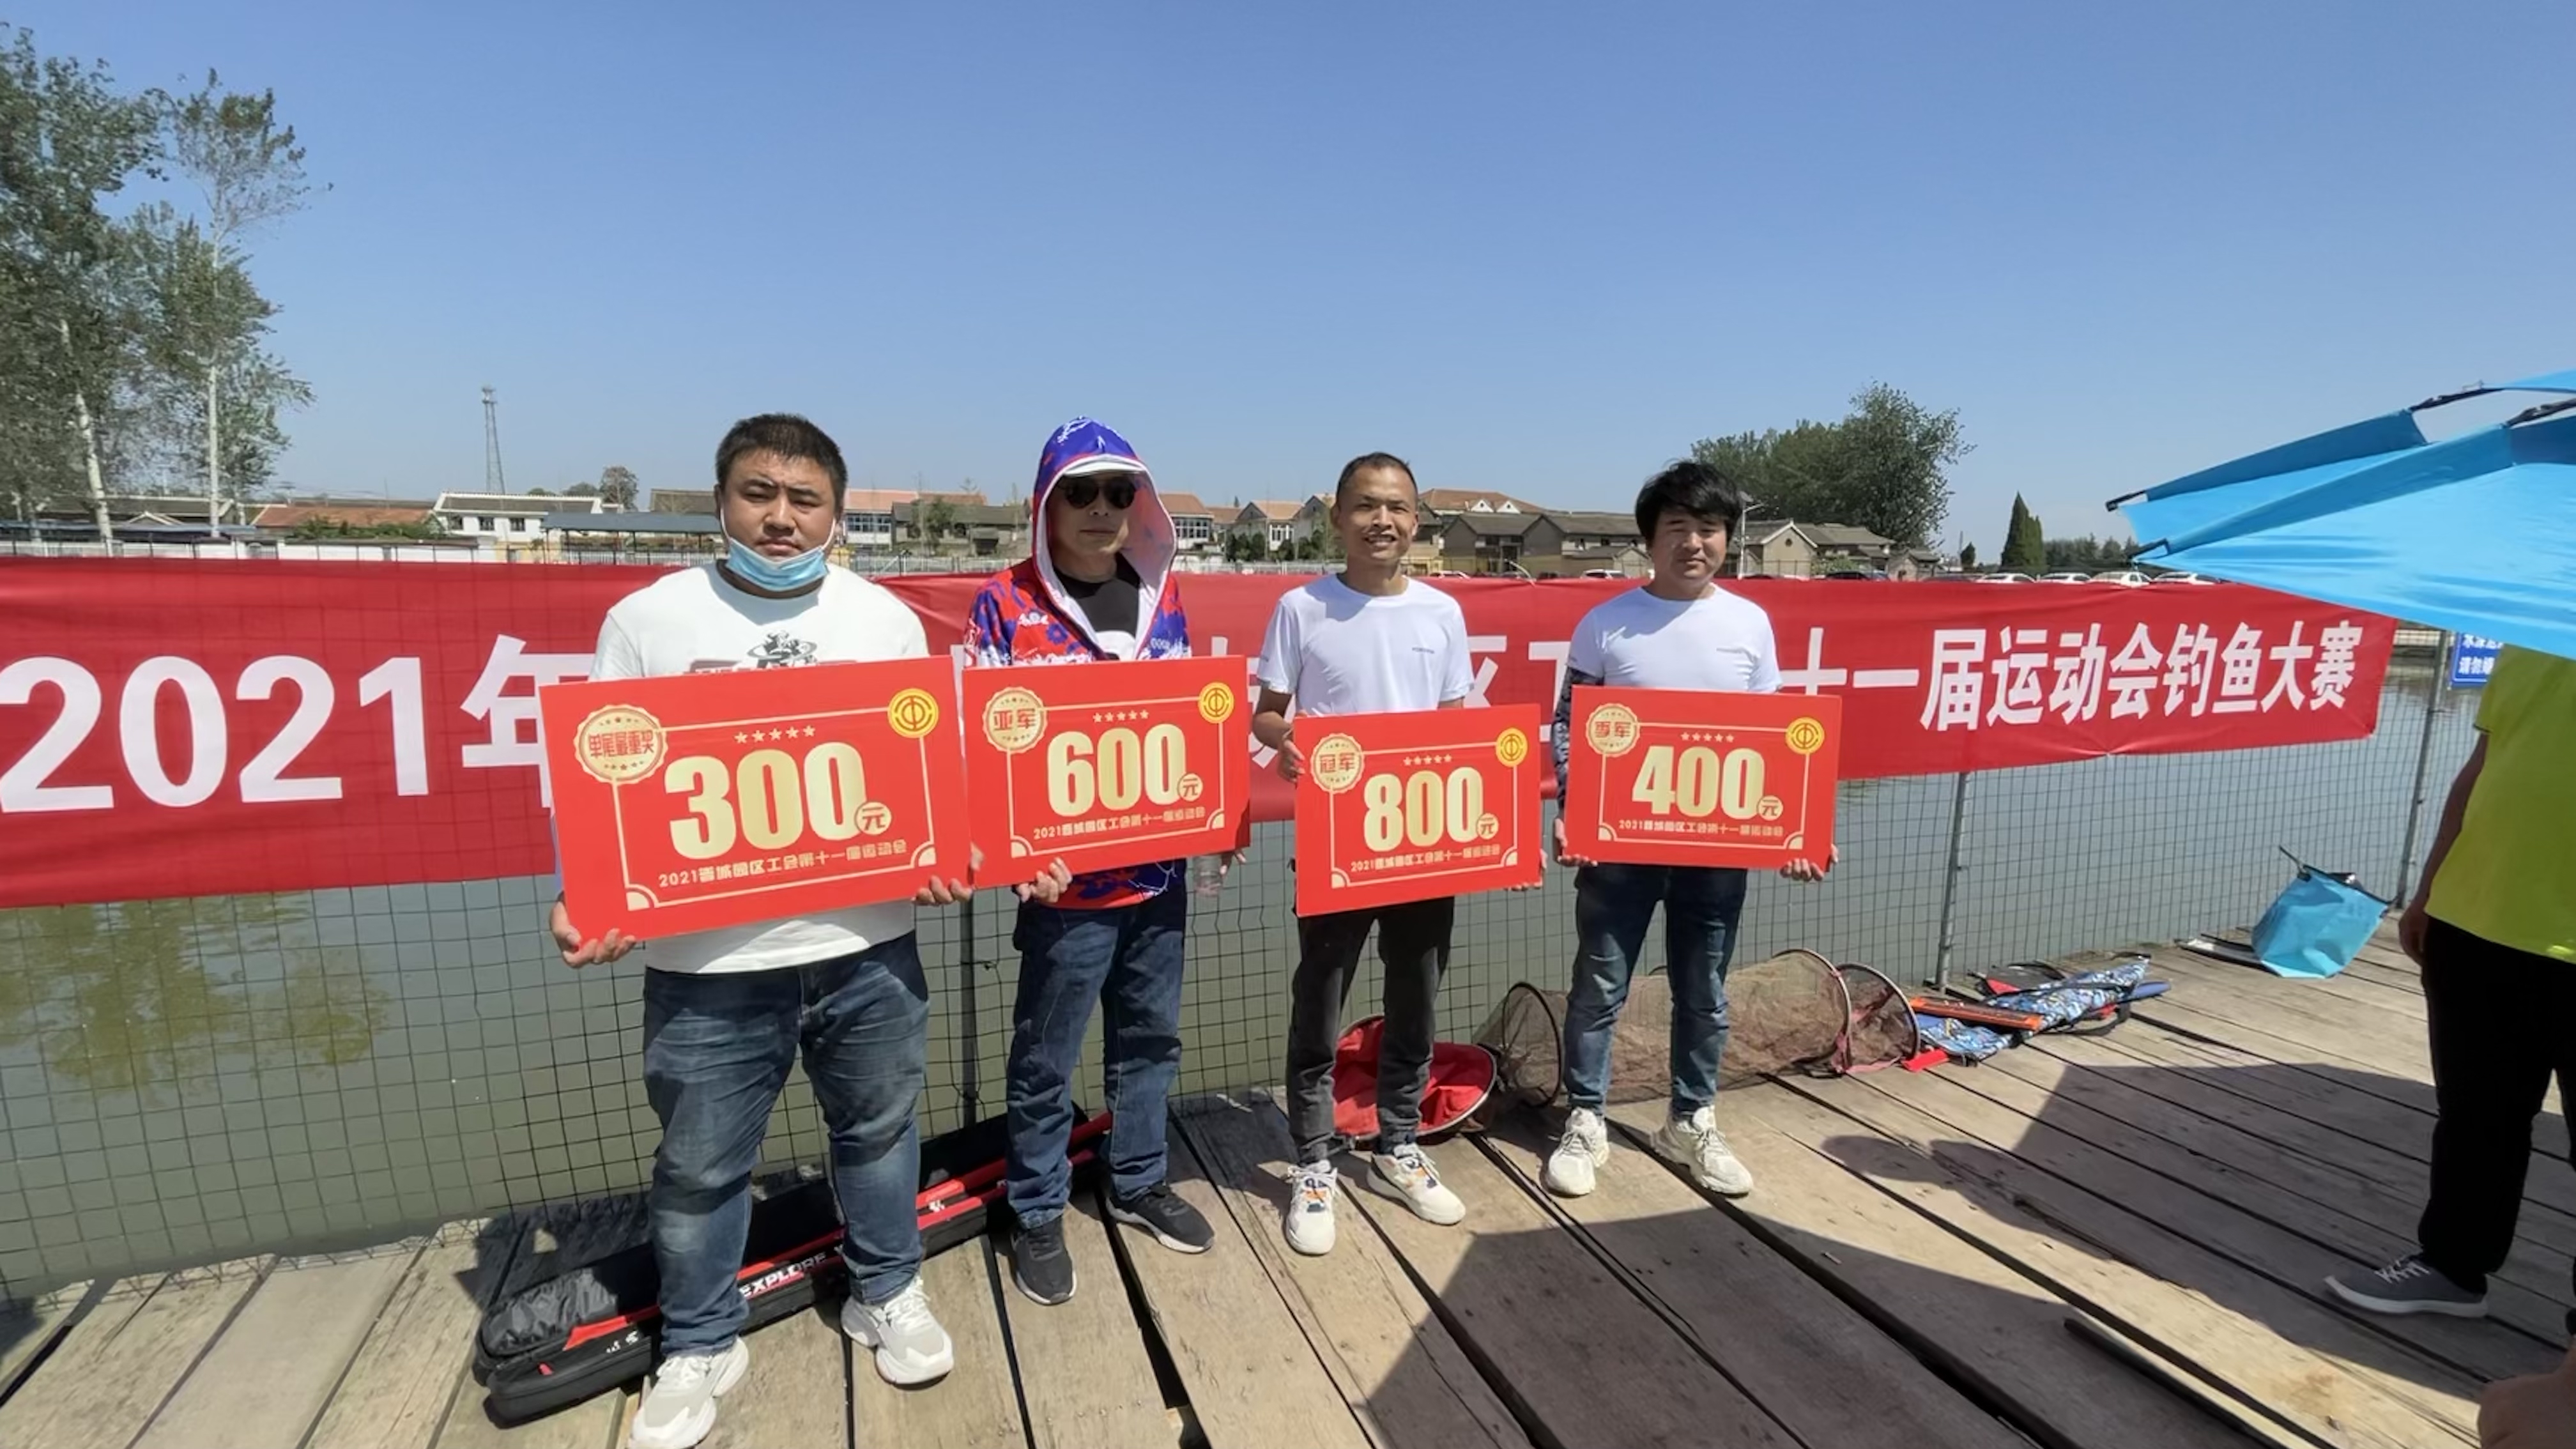 【晋城富士康】晋城富士康工会2021年第十一届运动会之钓鱼比赛